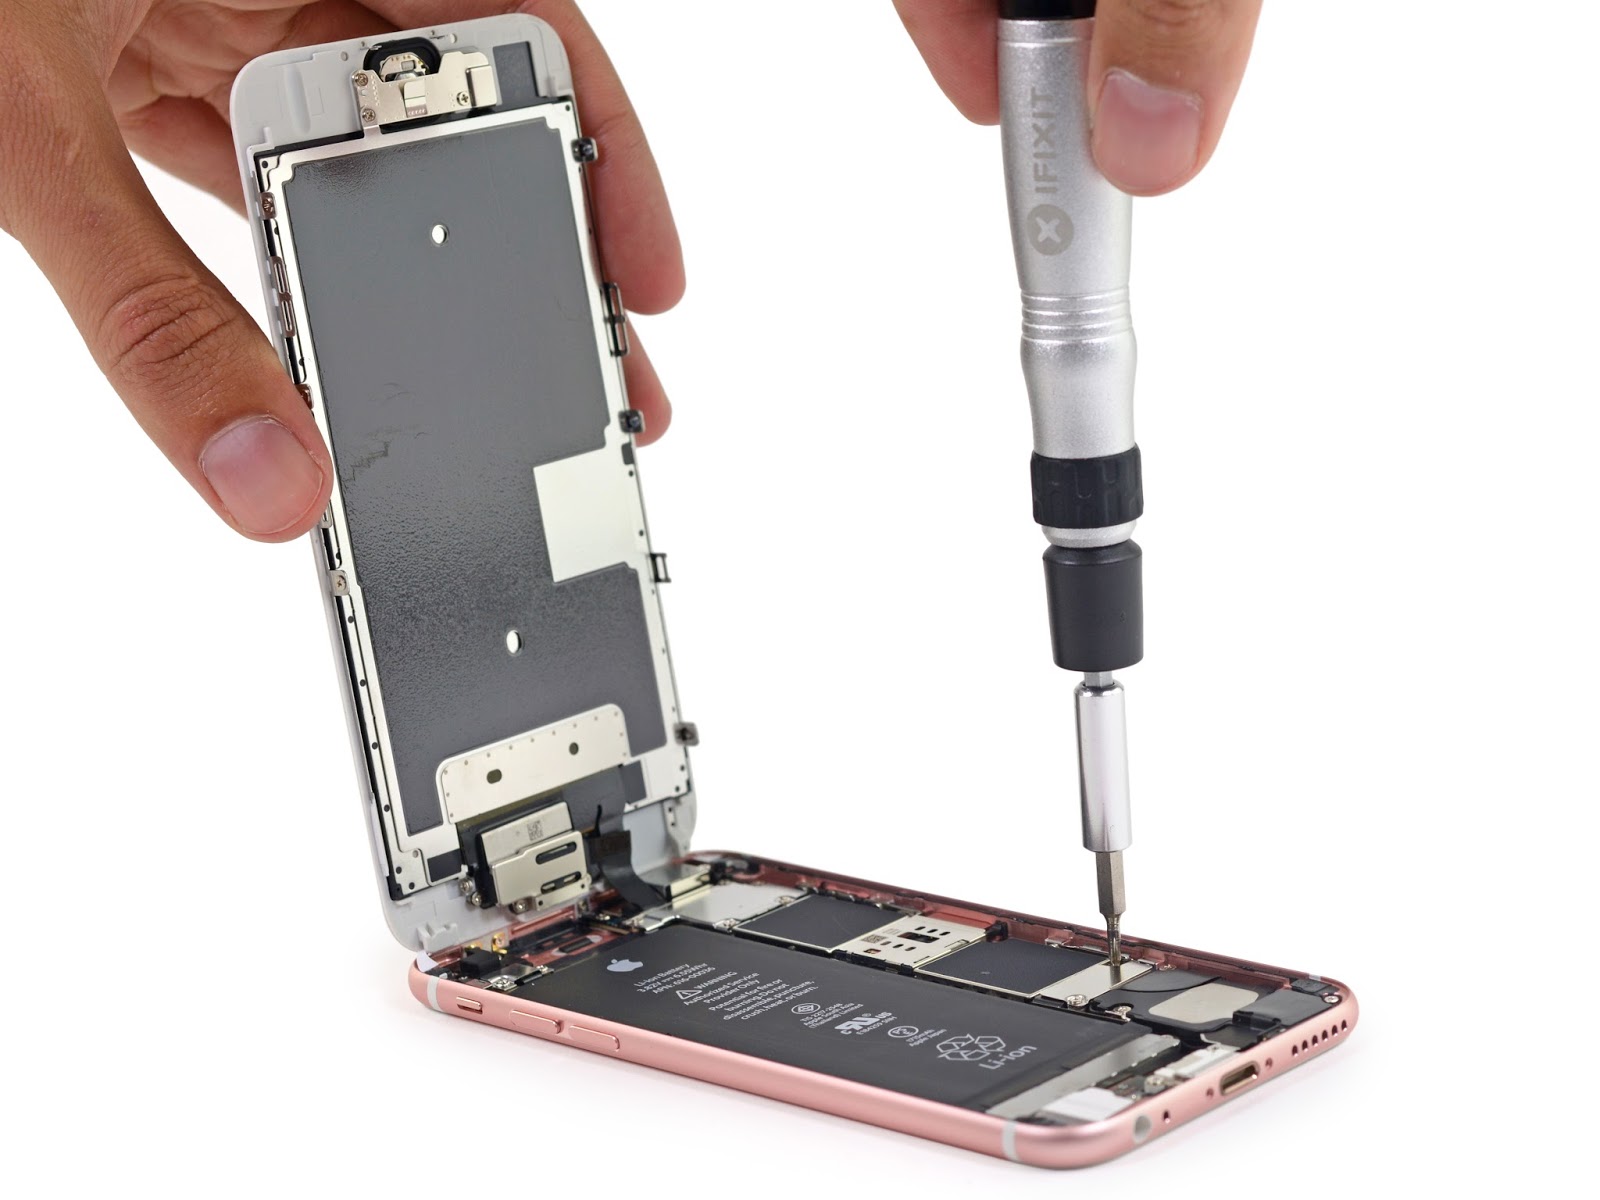 عملية تفكيك للهاتف iPhone 6s تكشف لنا عن بطارية بحجم صغير ...